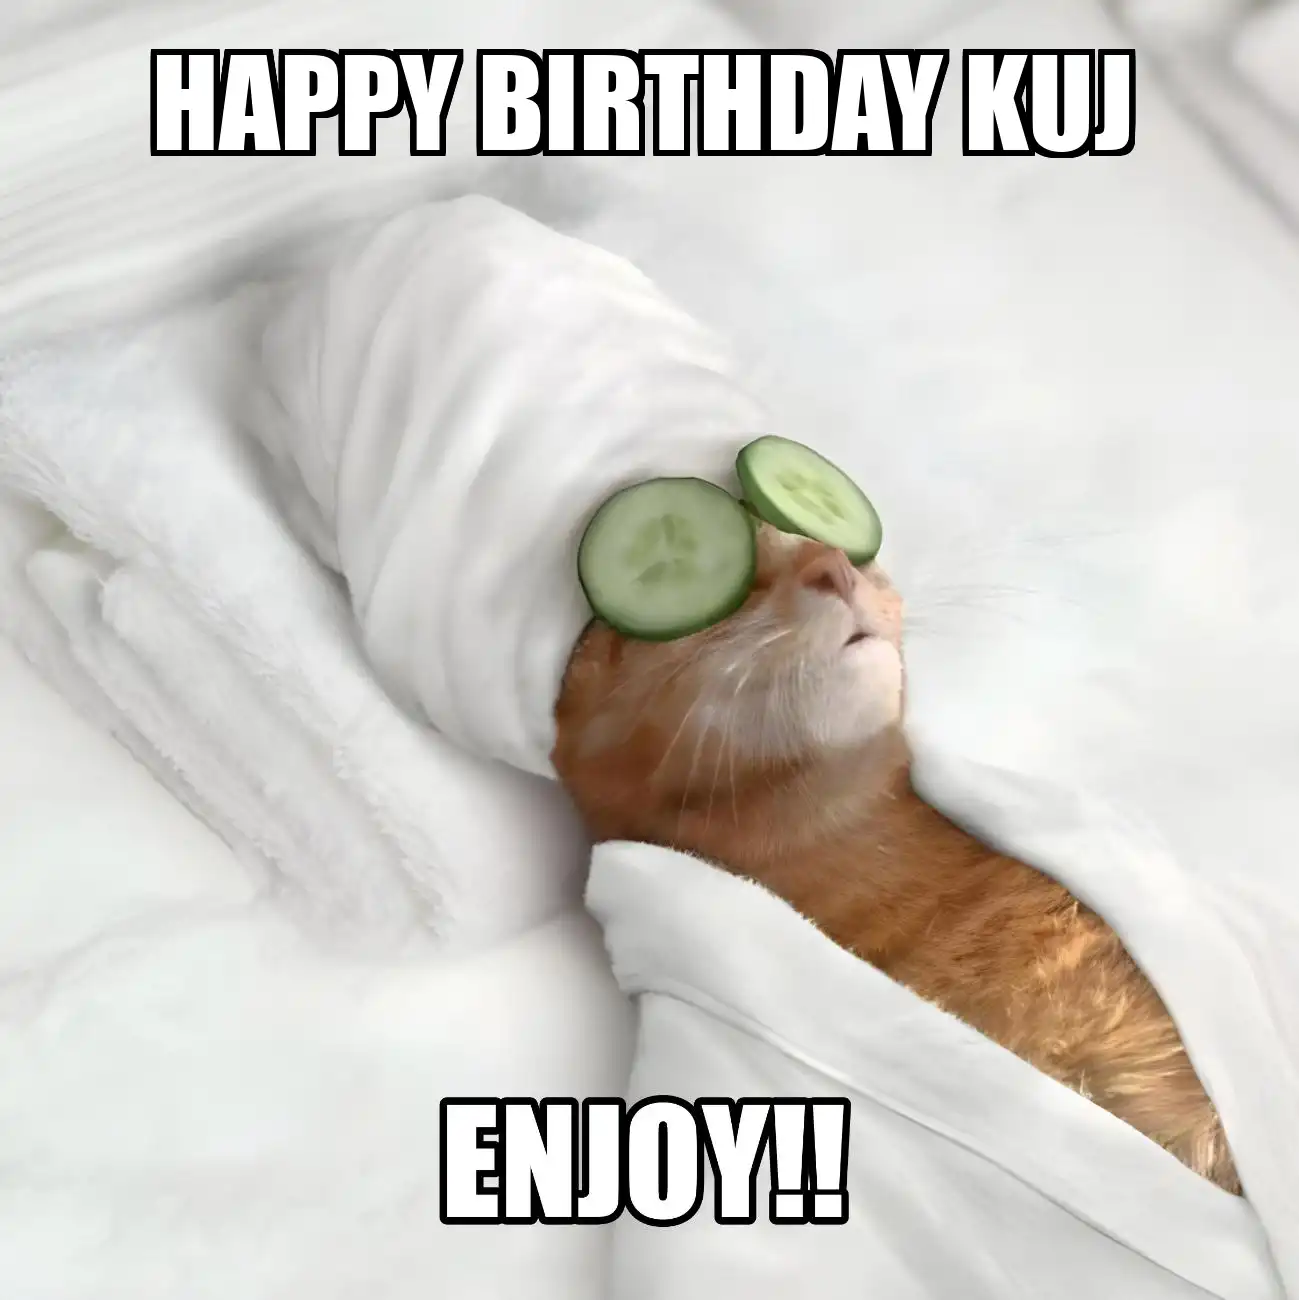 Happy Birthday Kuj Enjoy Cat Meme